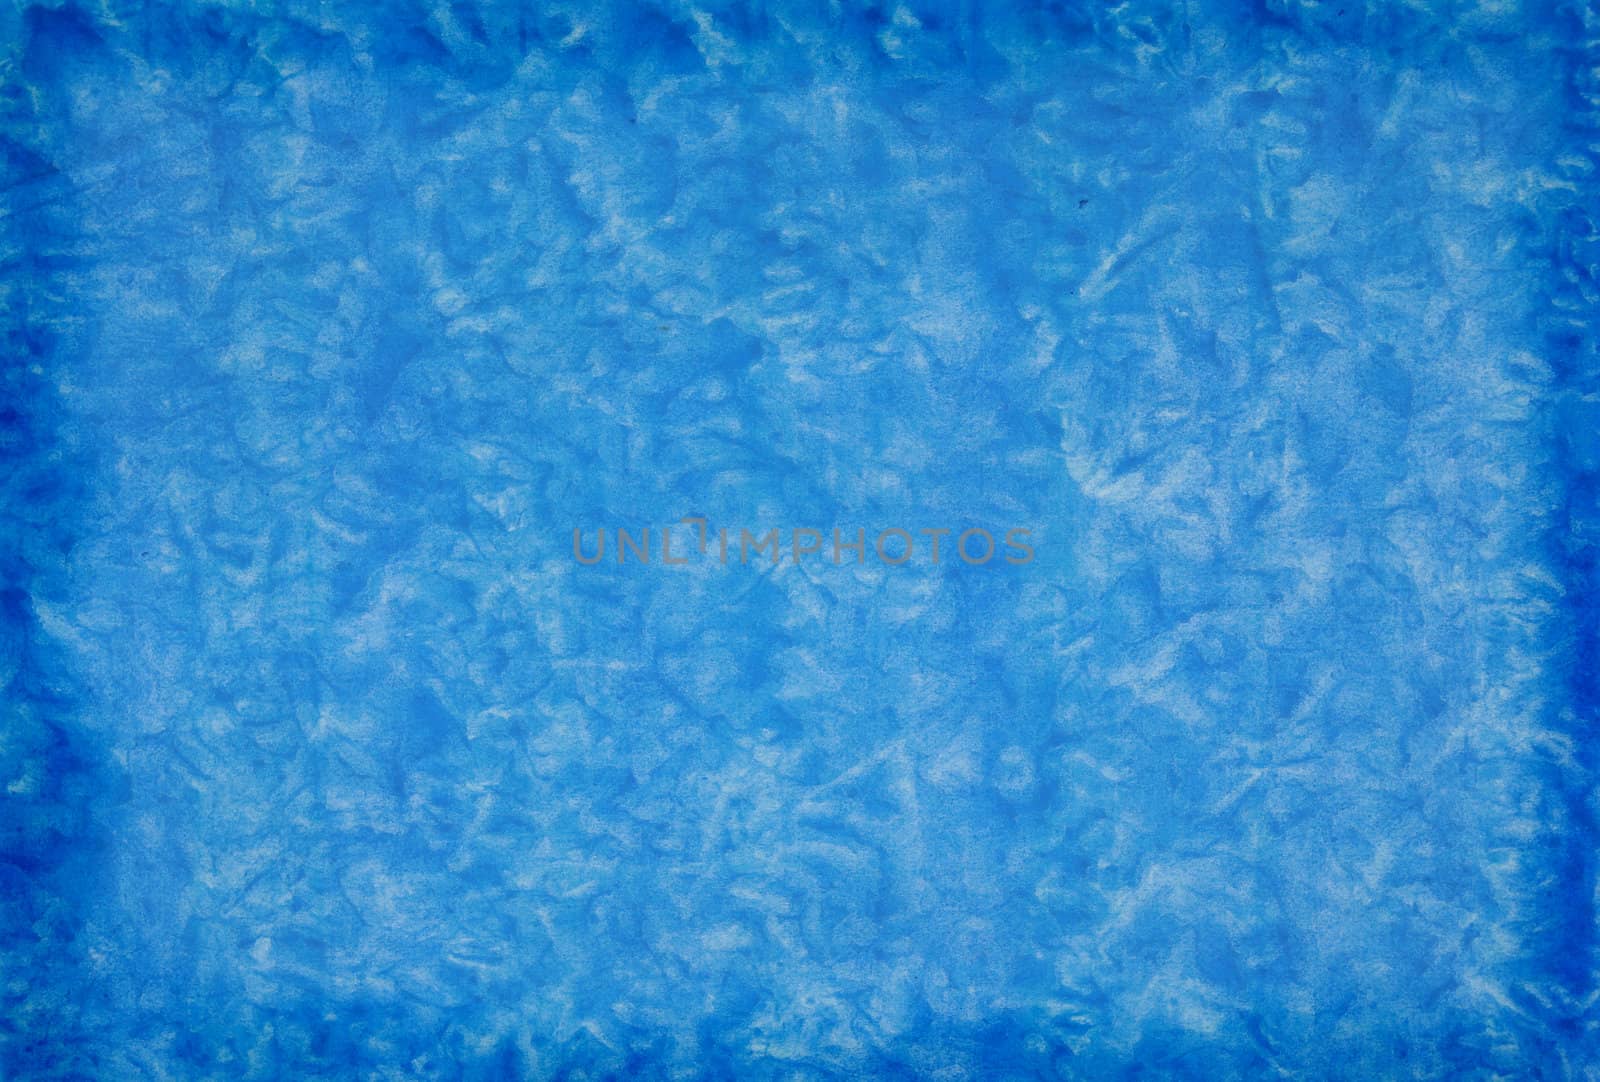 Blue mottled grunge background in variating hues